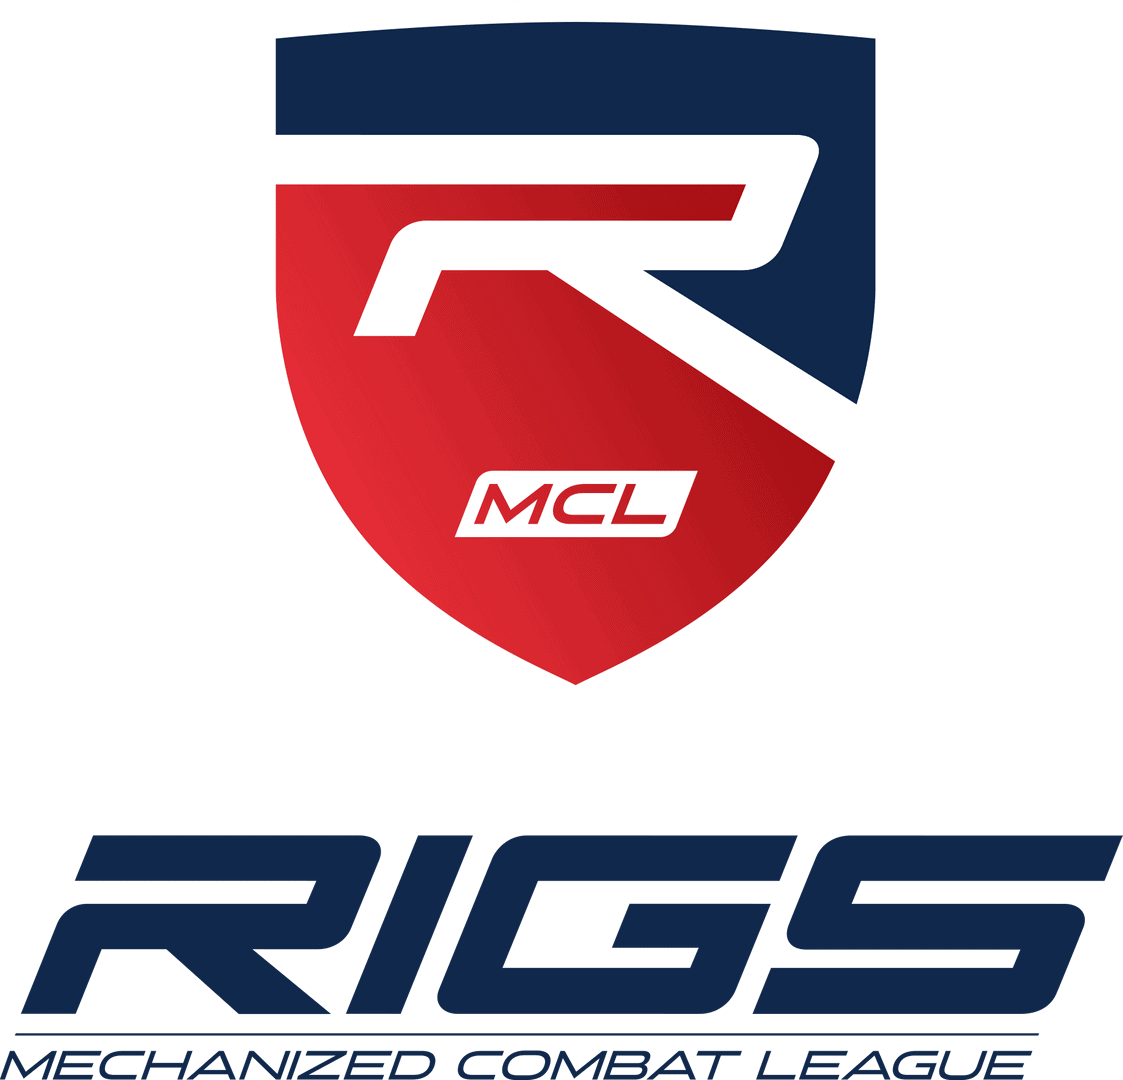 RIGS: Mechanized Combat League